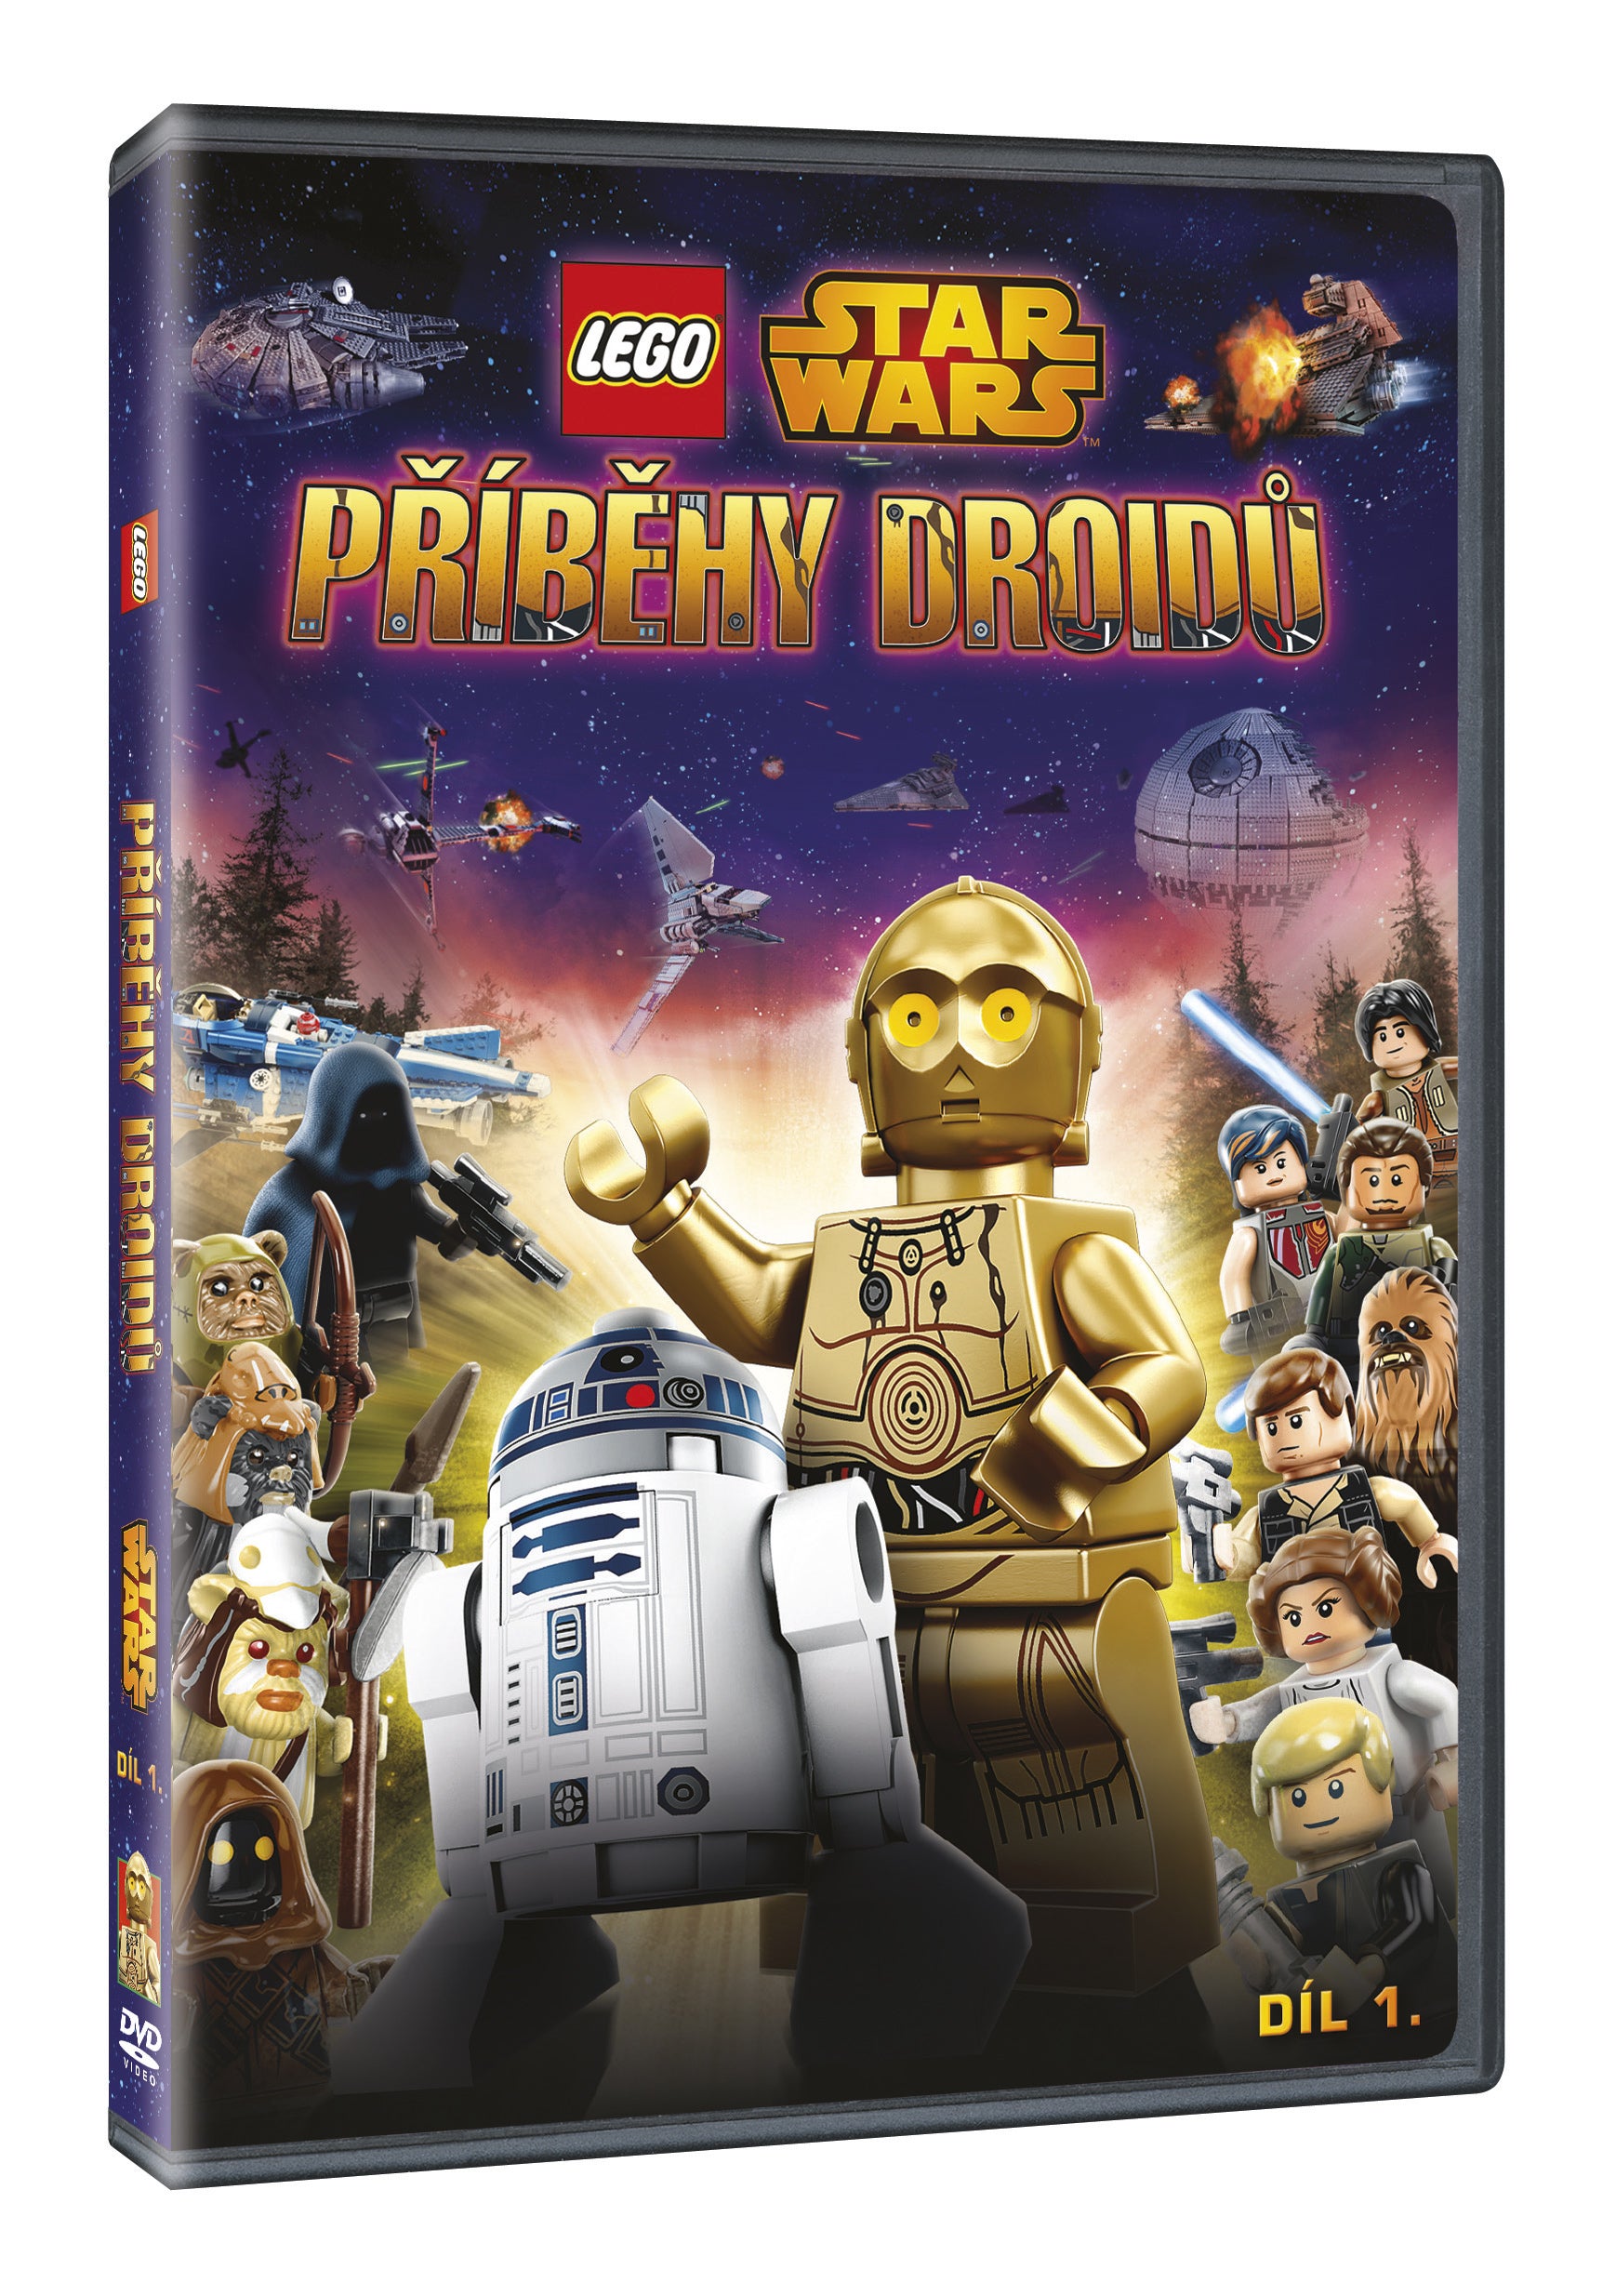 Lego Star Wars: Pribehy Droidu 1 DVD / LEGO Star Wars: Droid Tales: Band 1